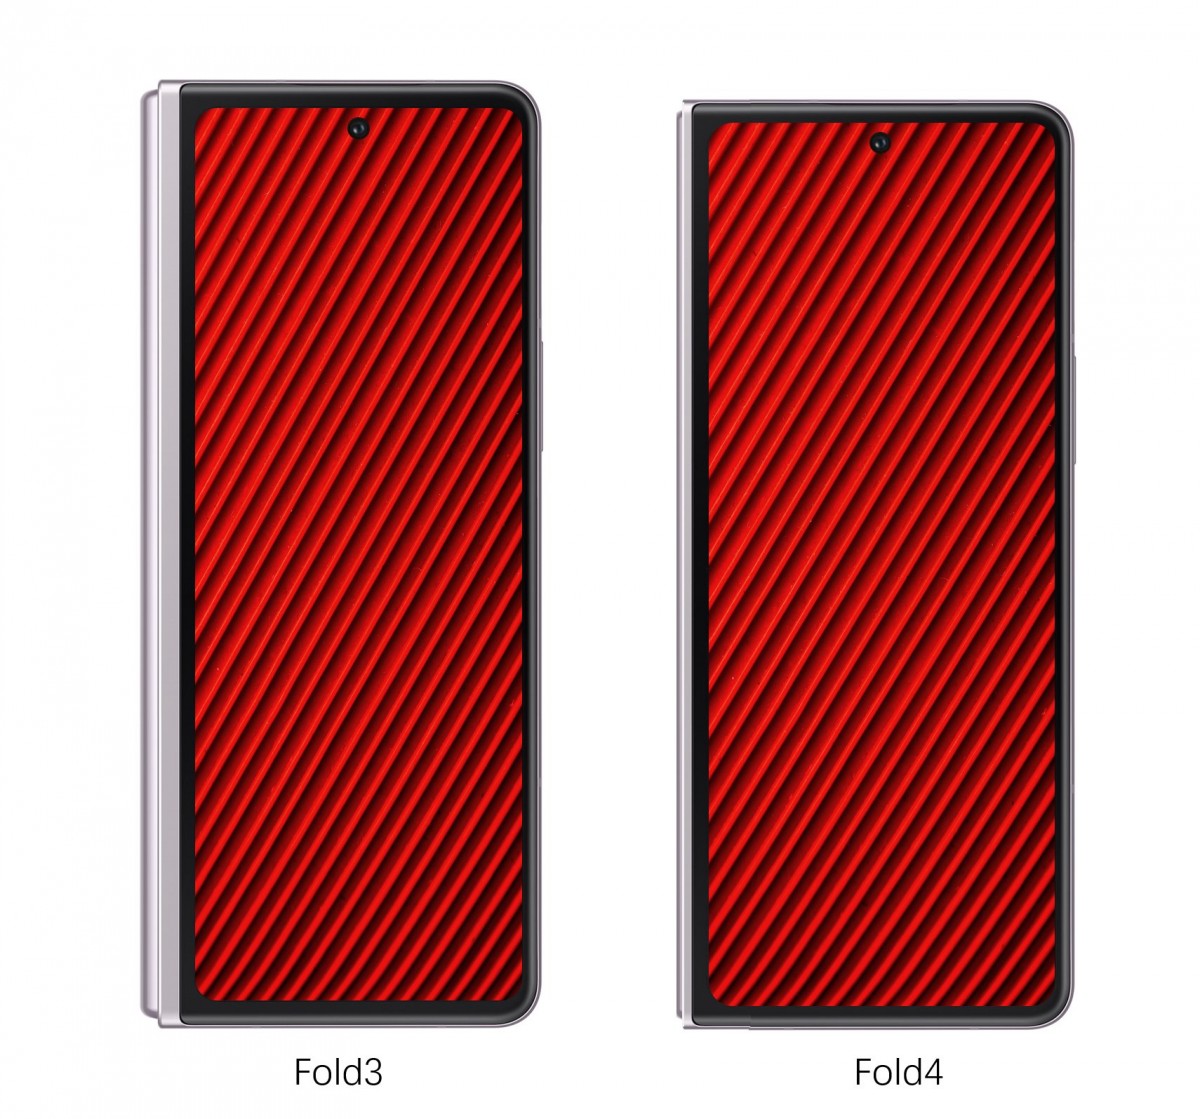 Galaxy Z Fold4 tendrá una relación de aspecto slasher en comparación con su predecesor